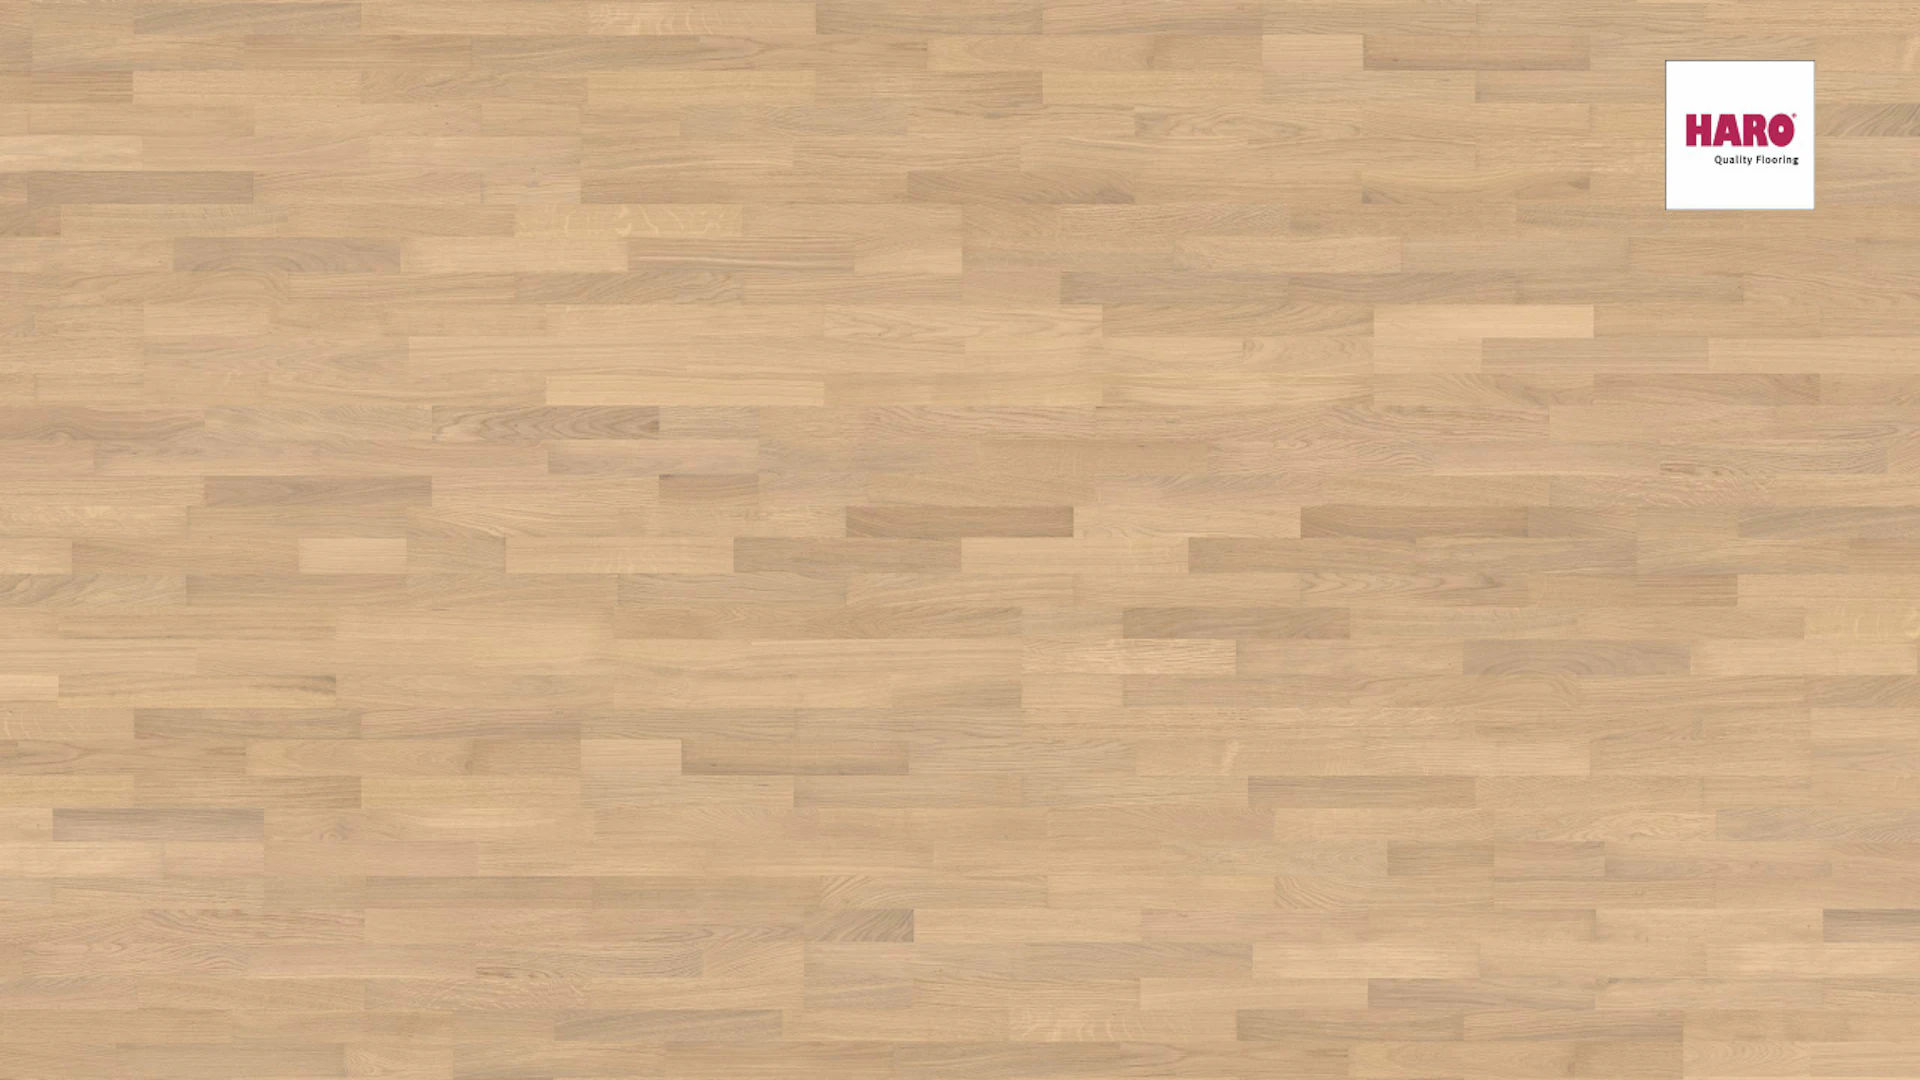 Haro Parquet Flooring - Series 4000 Puro naturaLin plus White Oak Trend (533343)